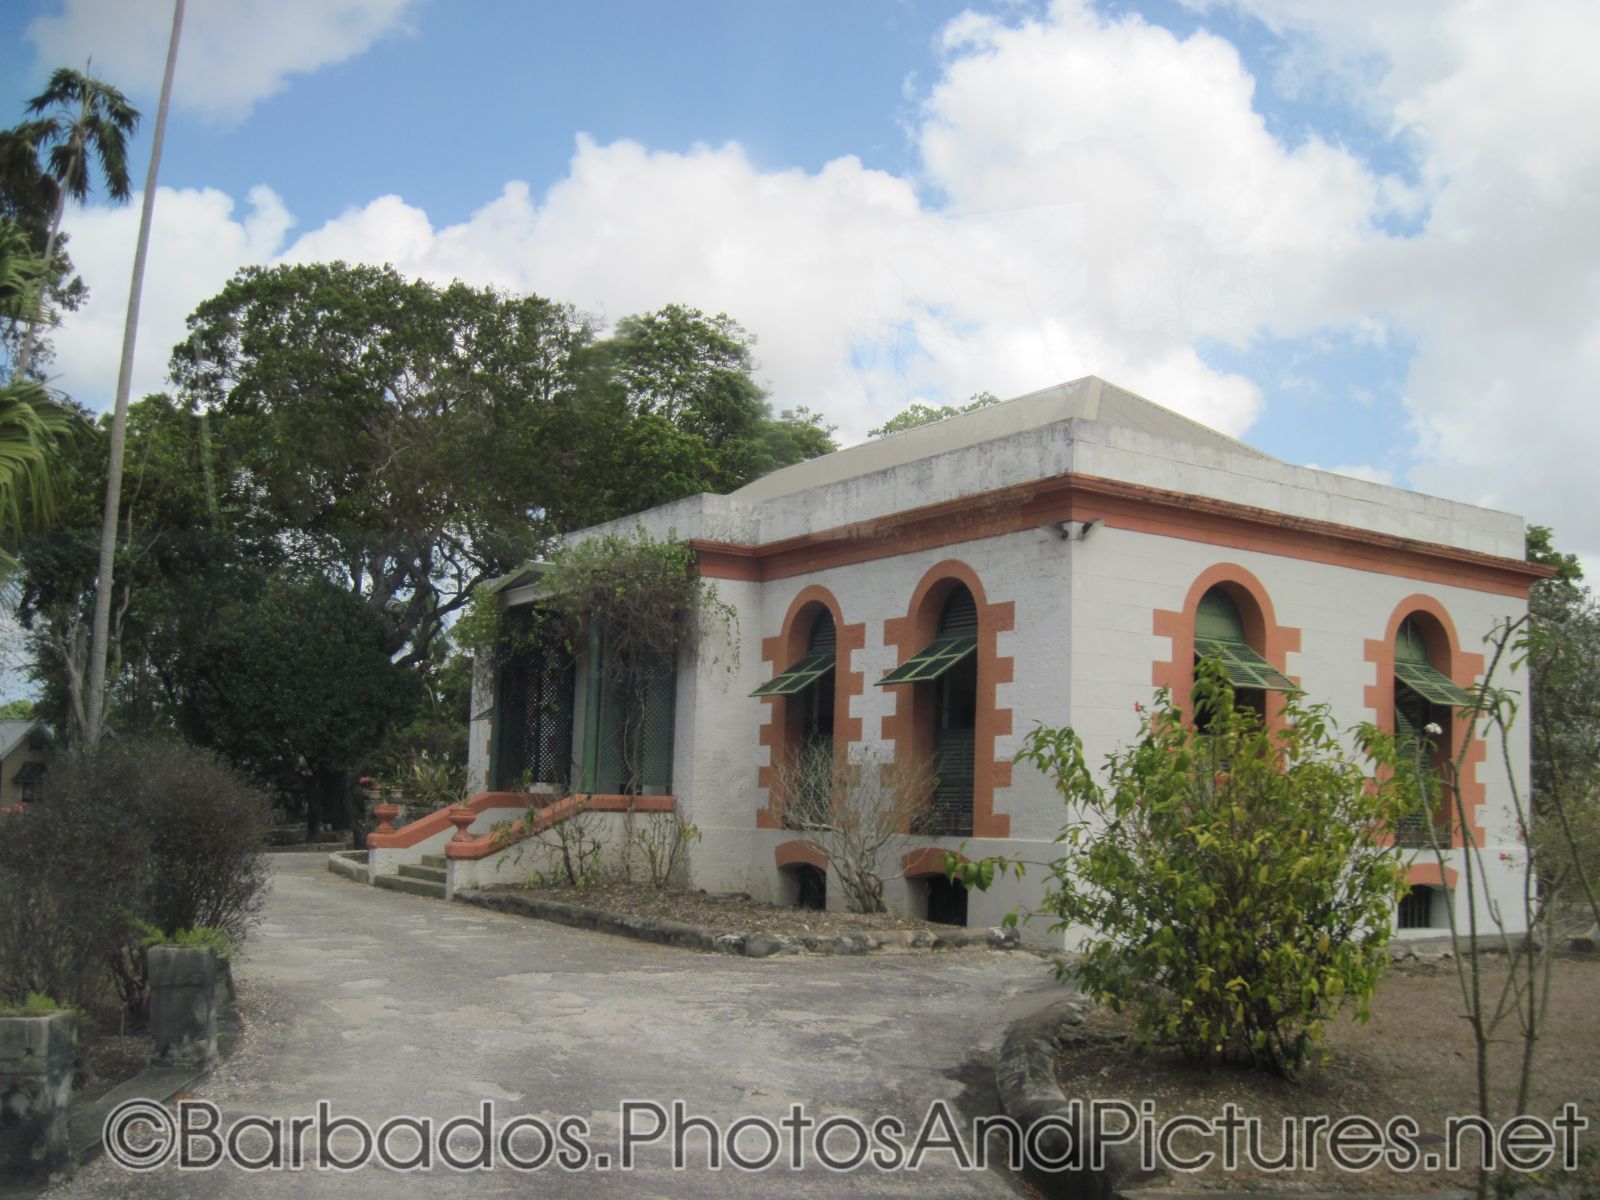 Tyrol Cot house Barbados.jpg
